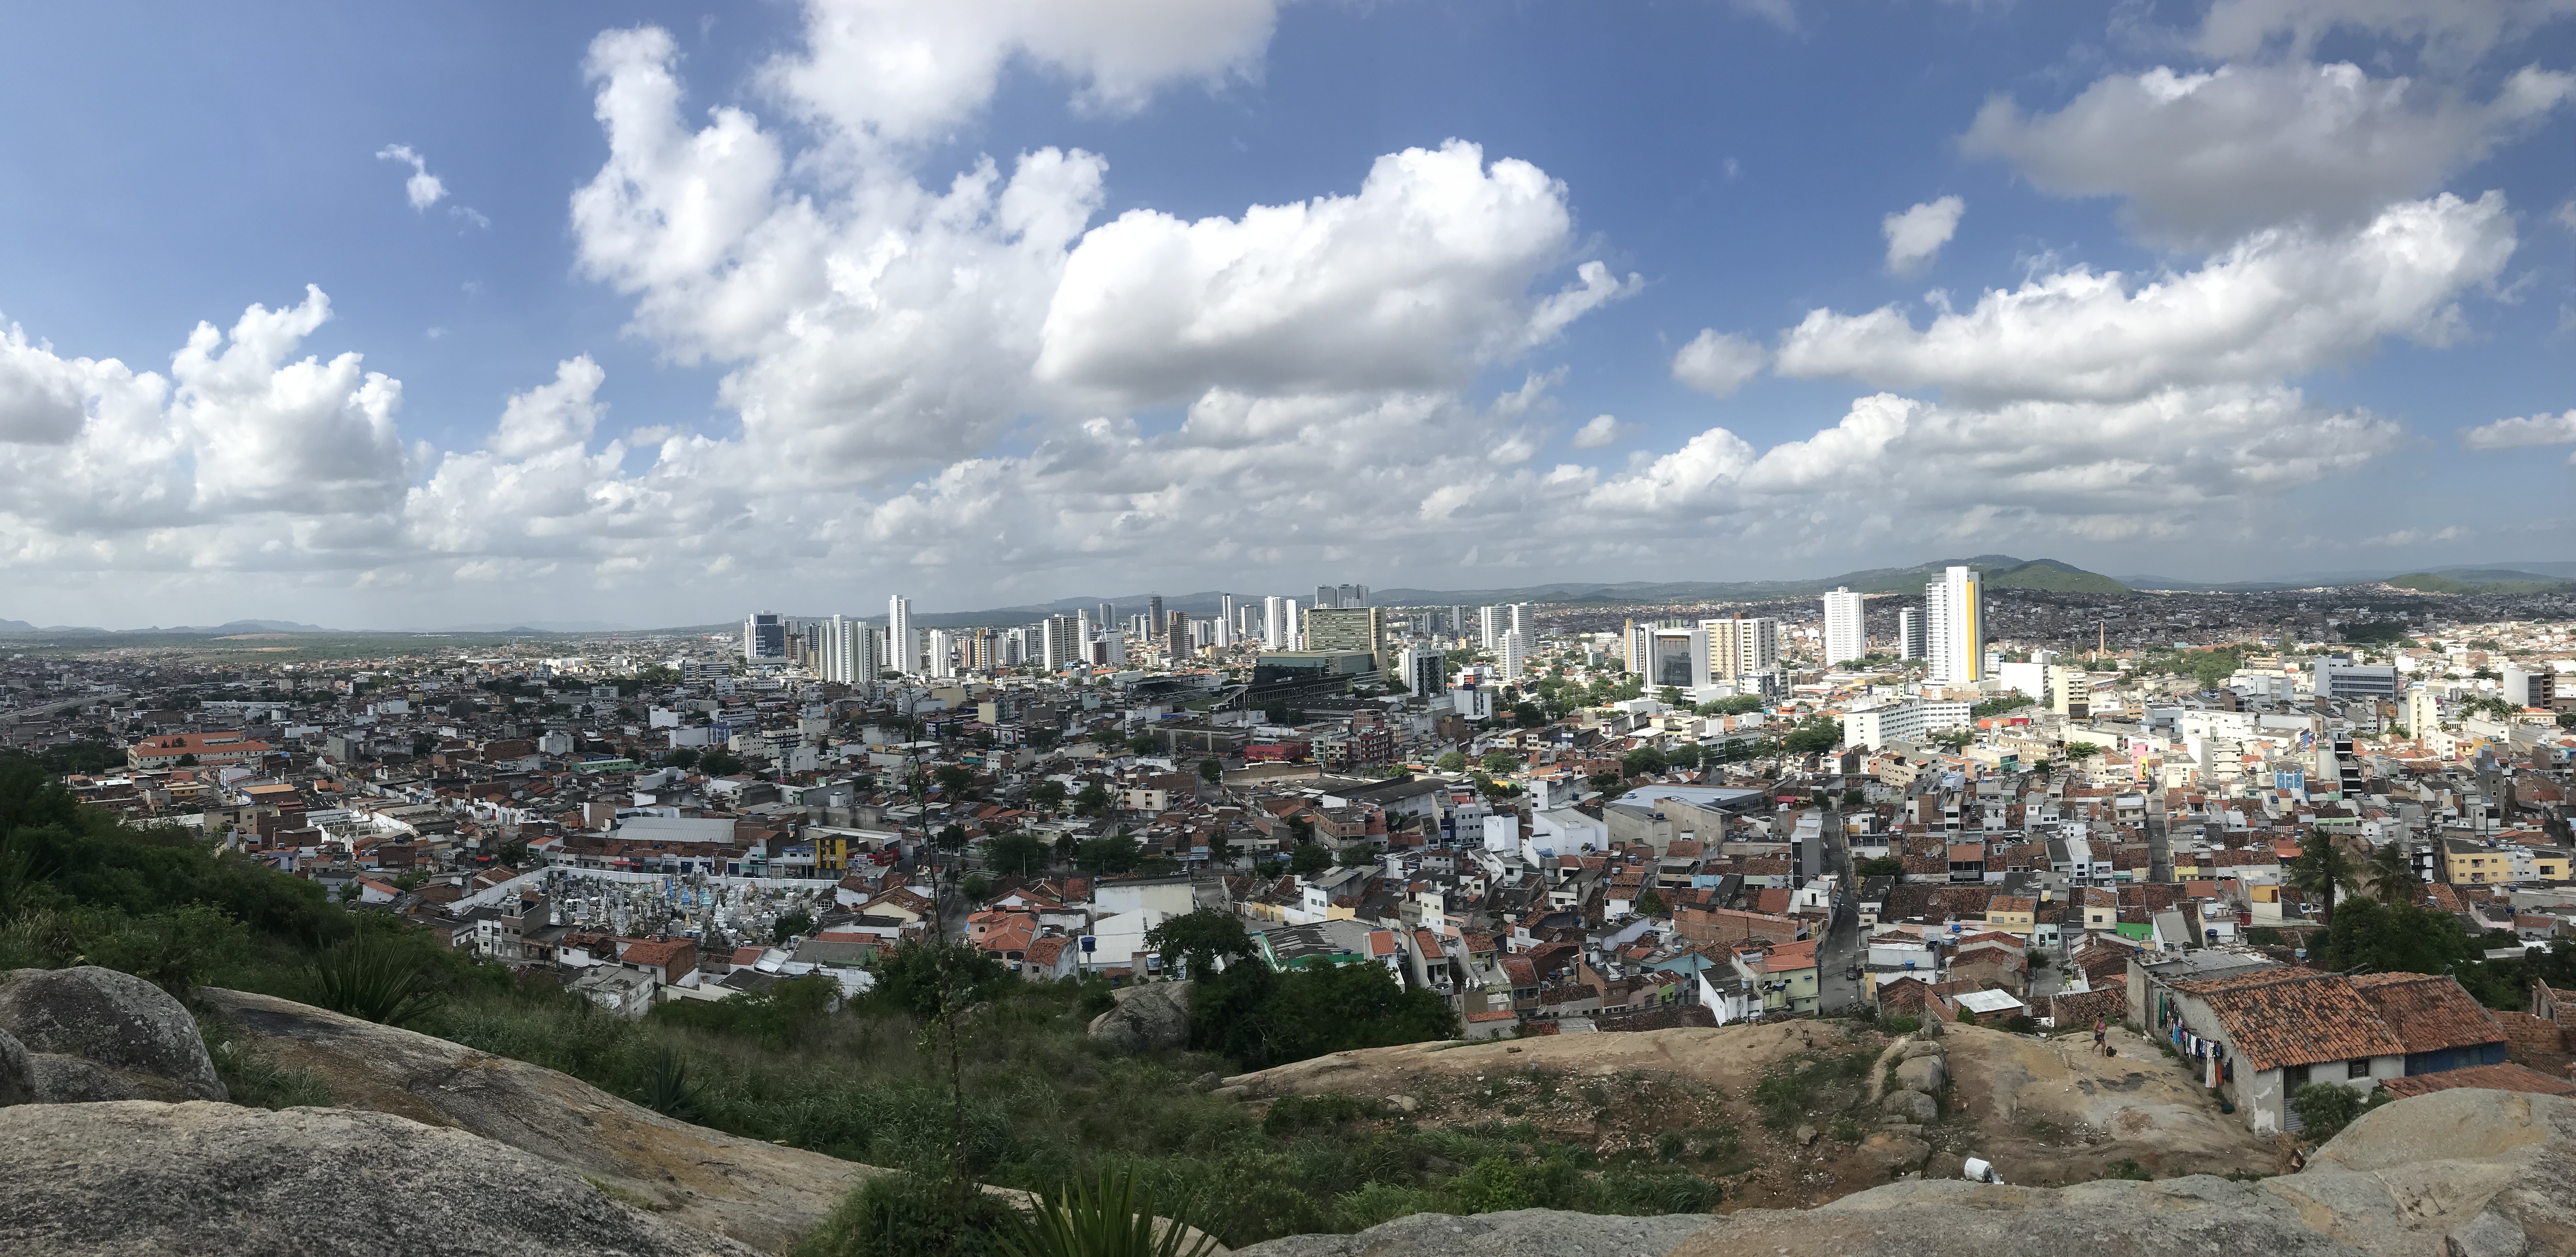 Homenagens: Influencers falam qual lugar de Caruaru é especial para eles